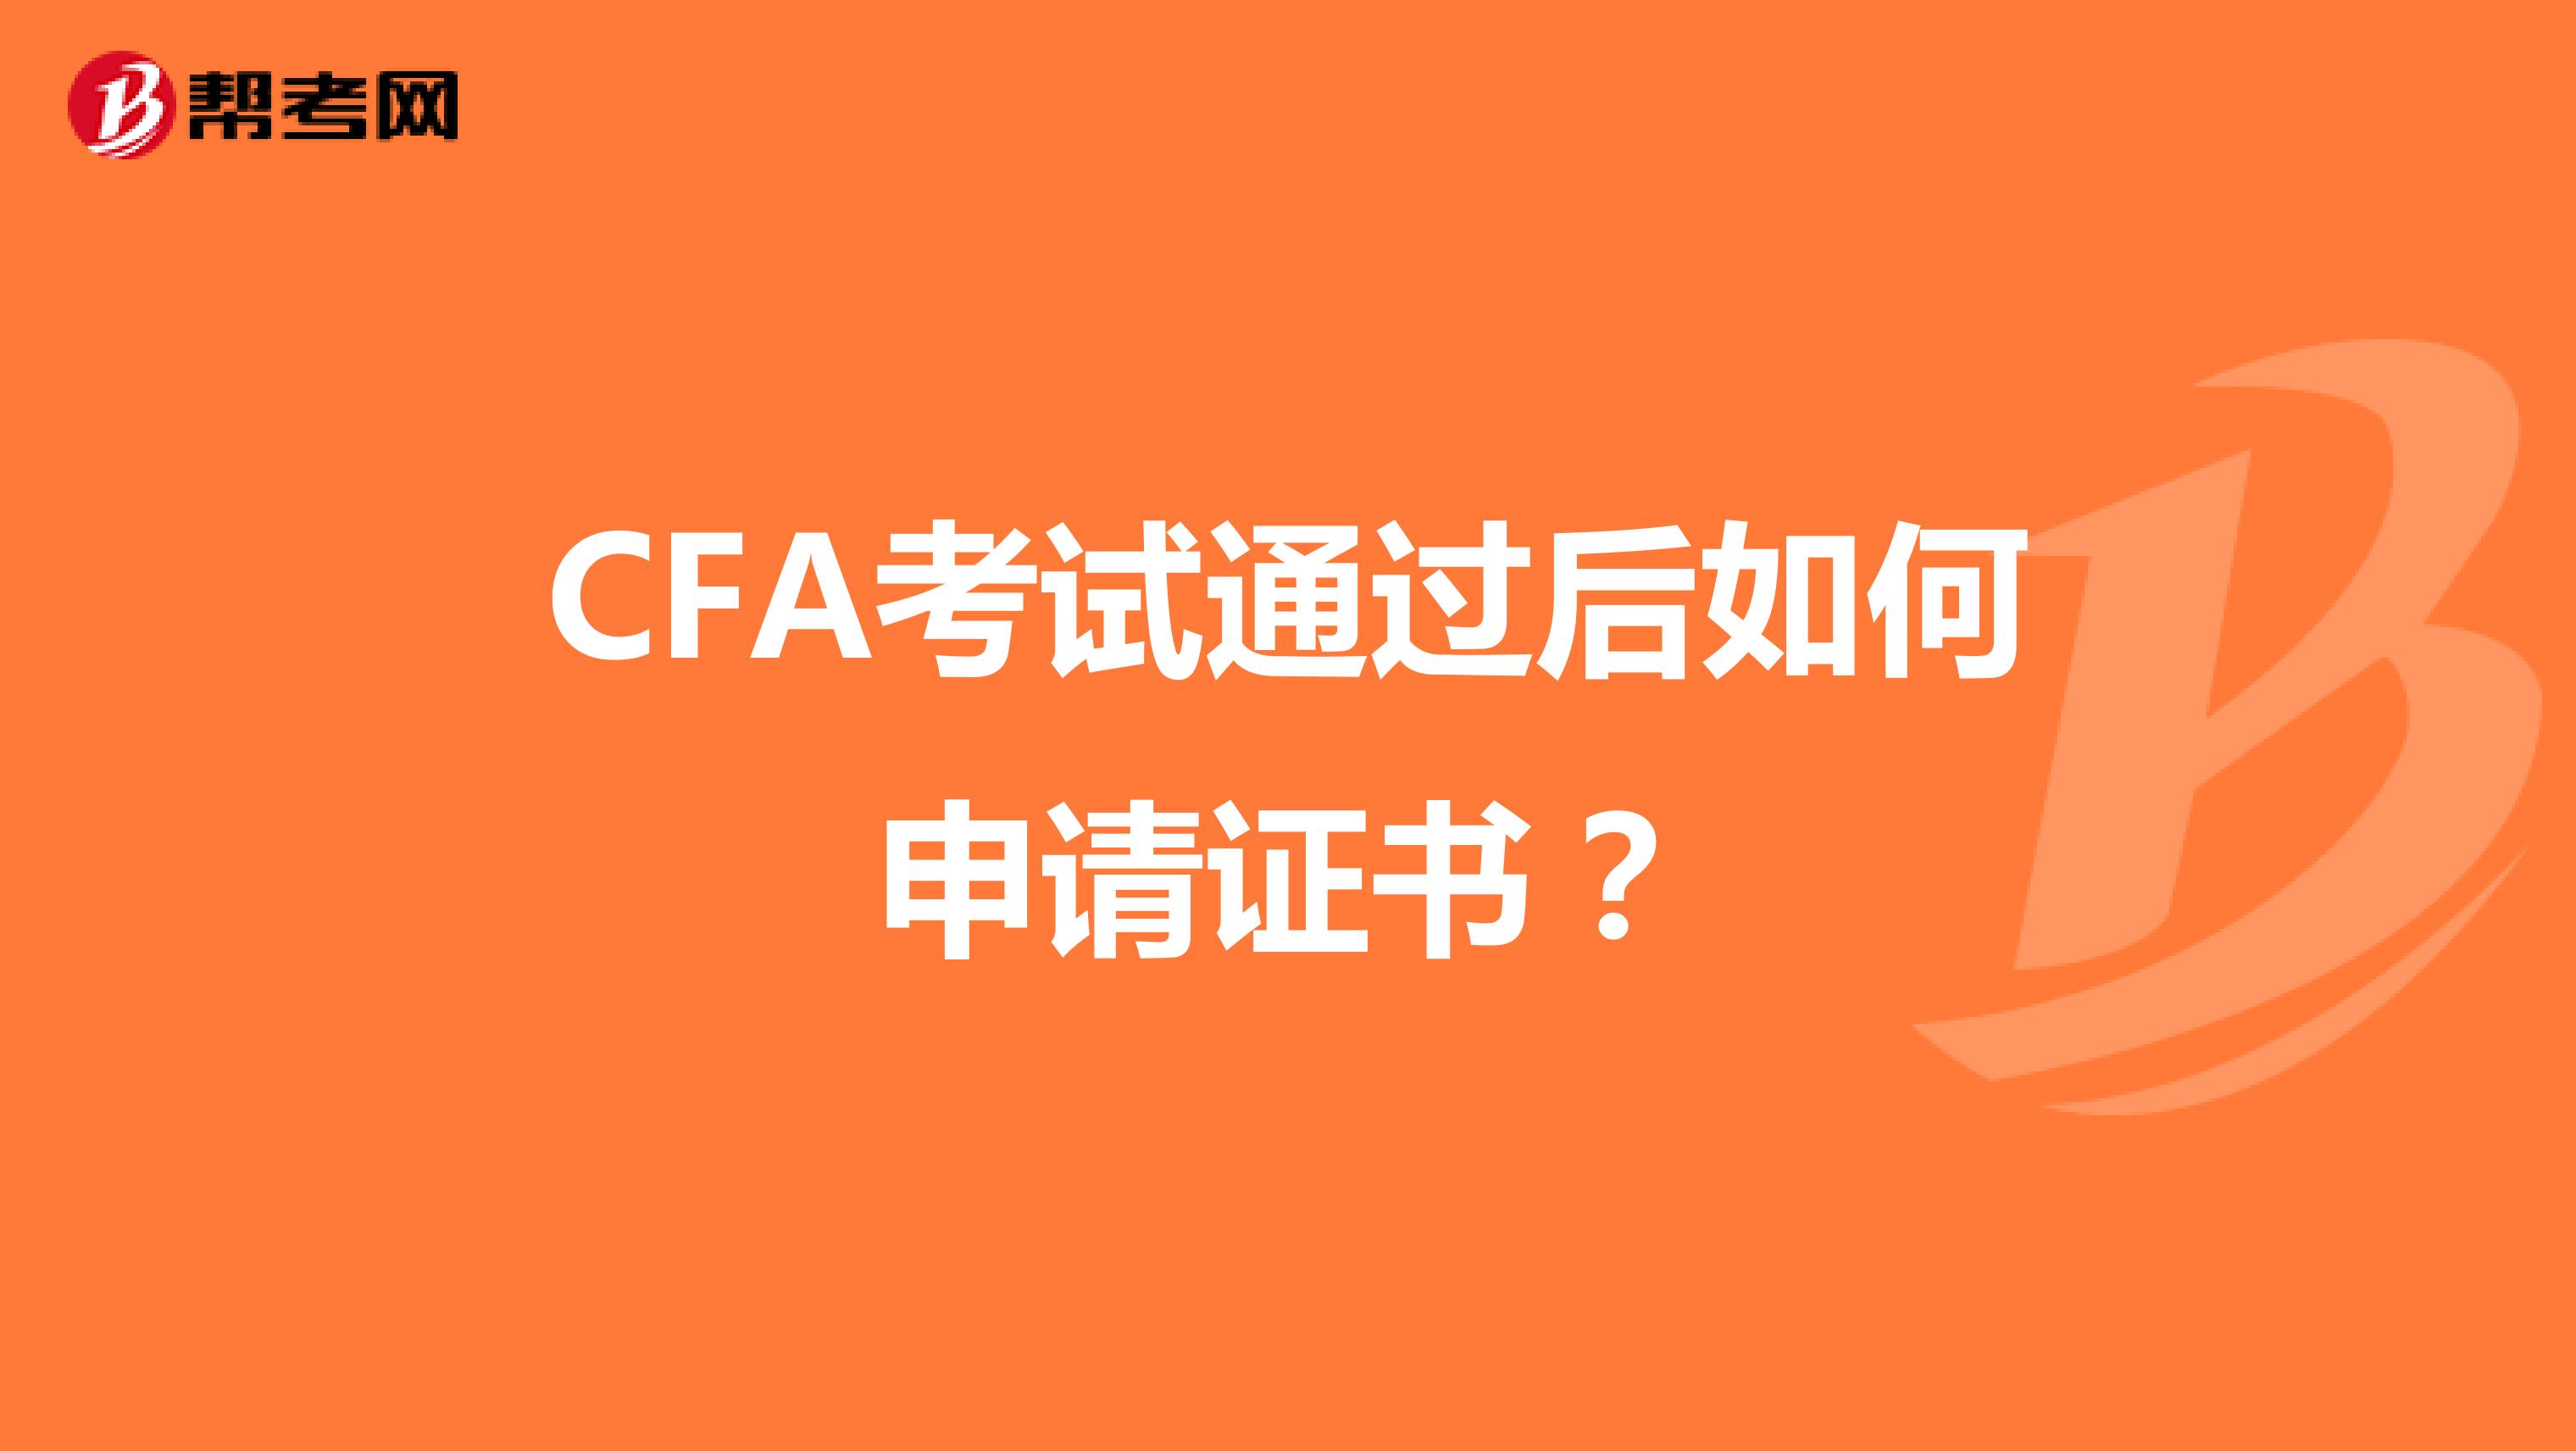 CFA考试通过后如何申请证书？